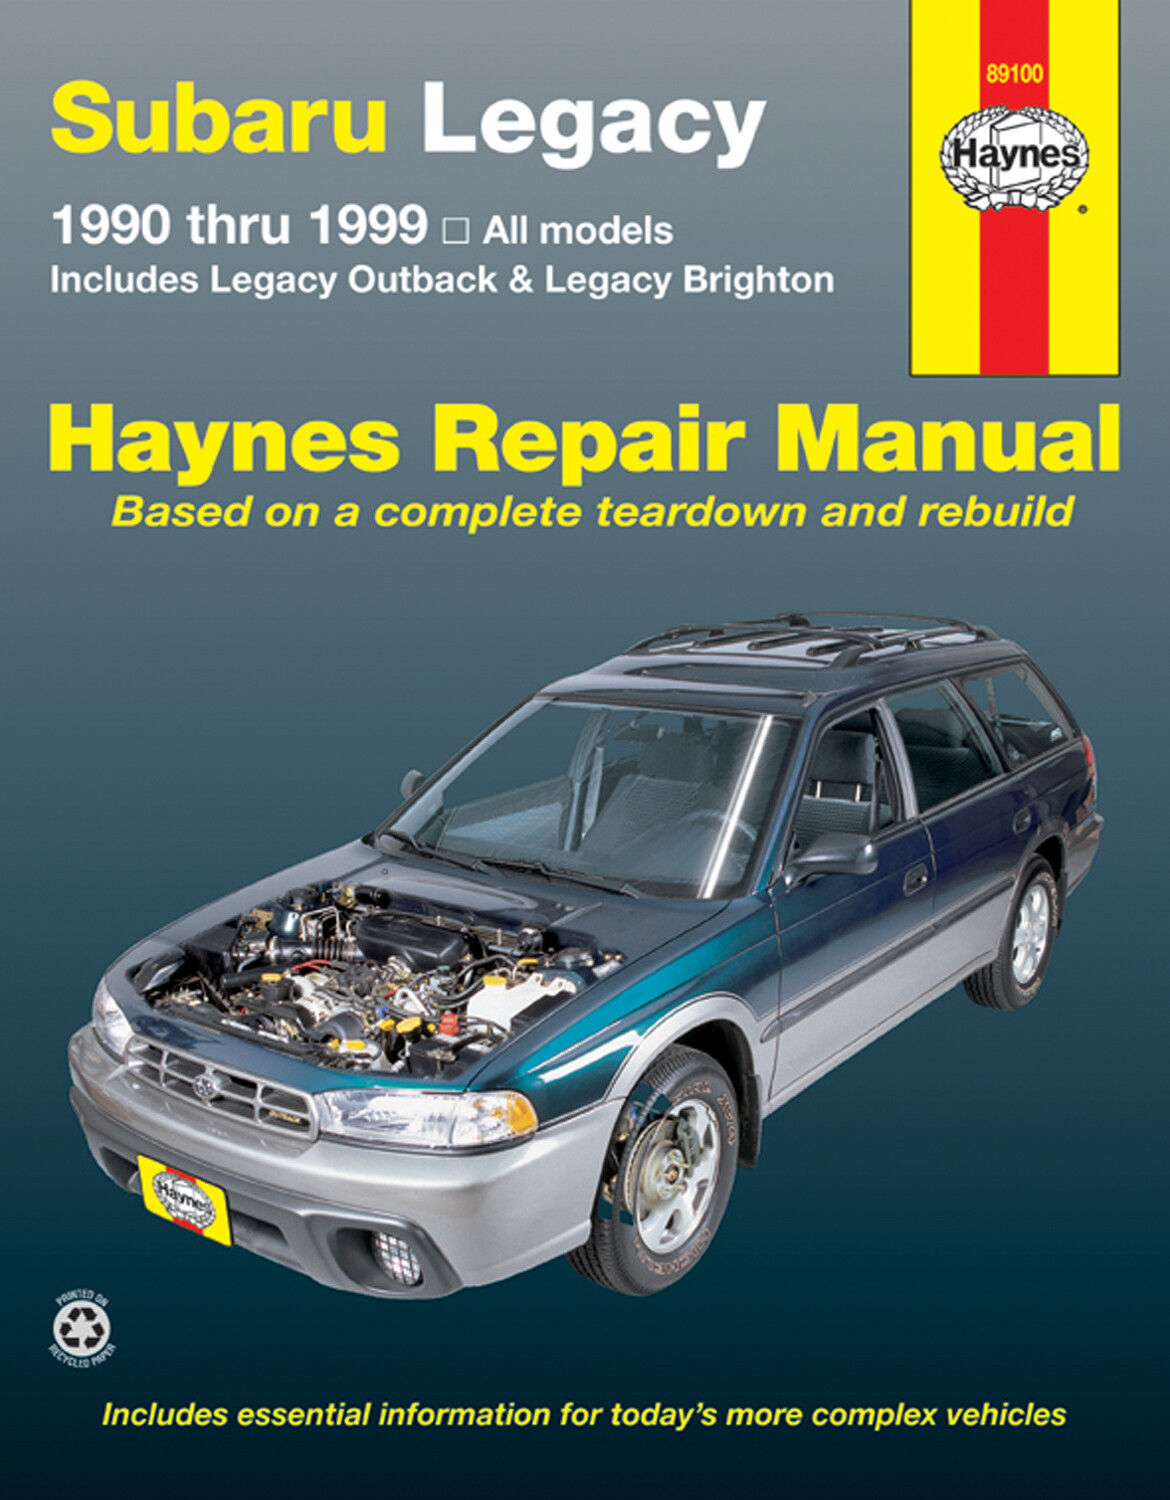 Repair Manual Haynes 89100 fits 90-99 Subaru Legacy